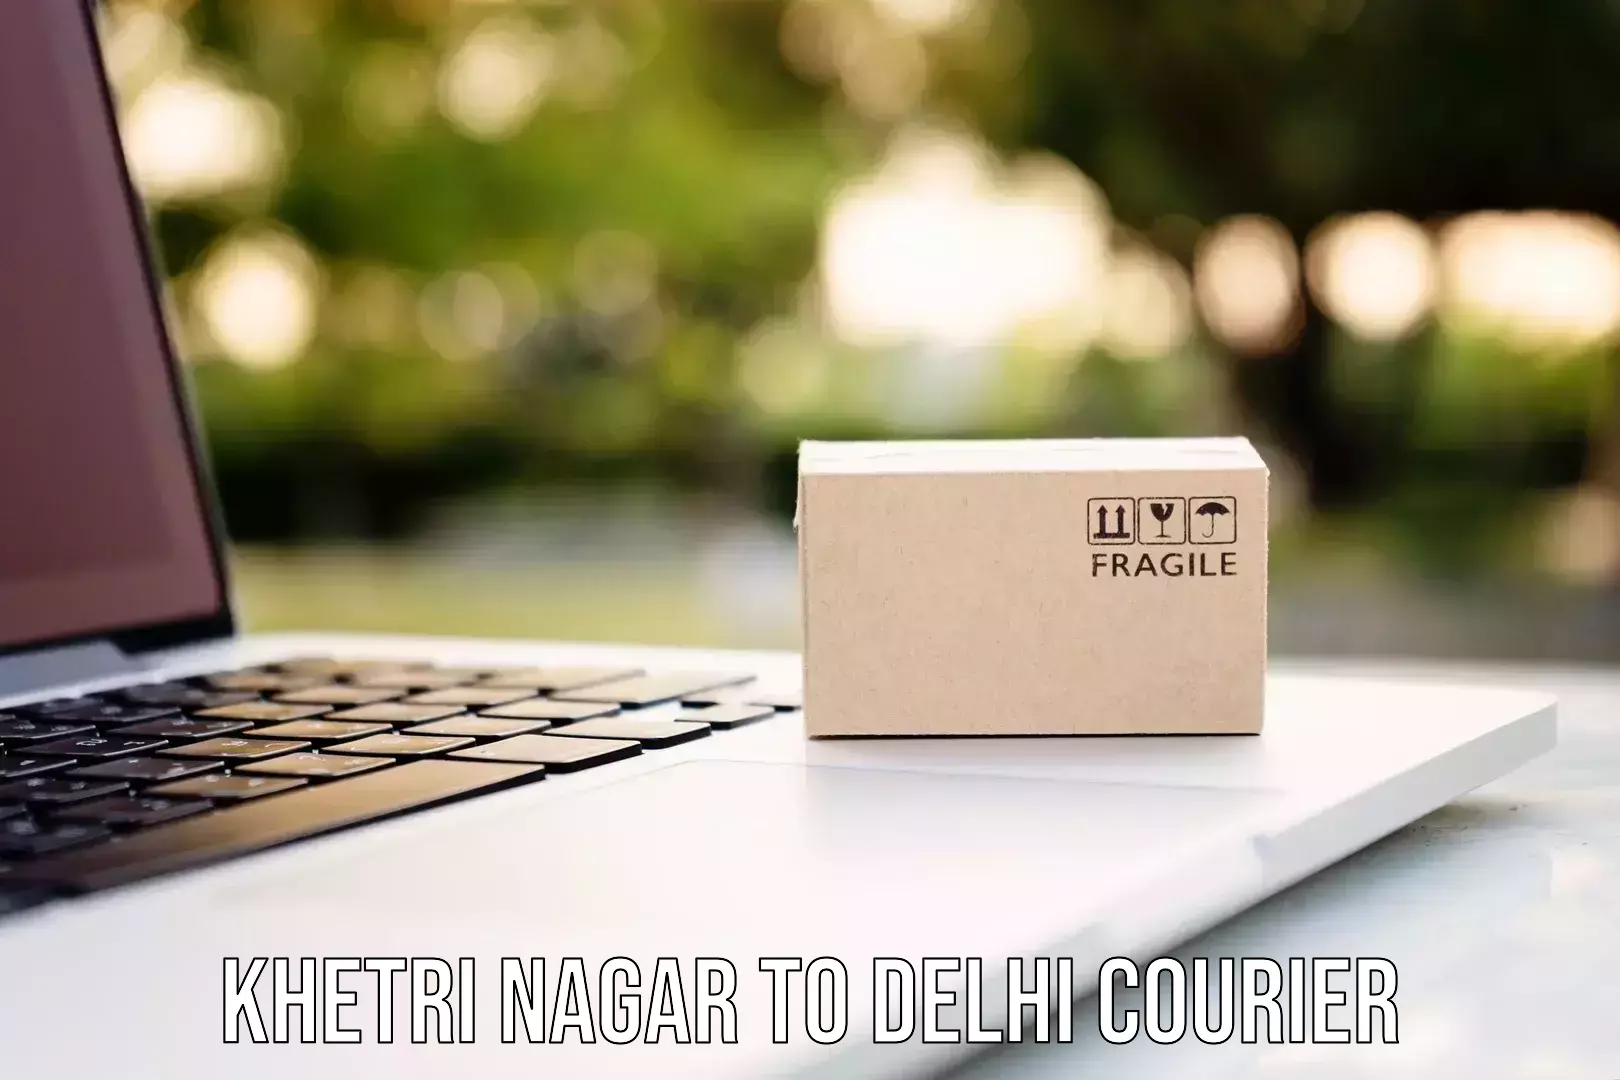 Courier insurance Khetri Nagar to NIT Delhi